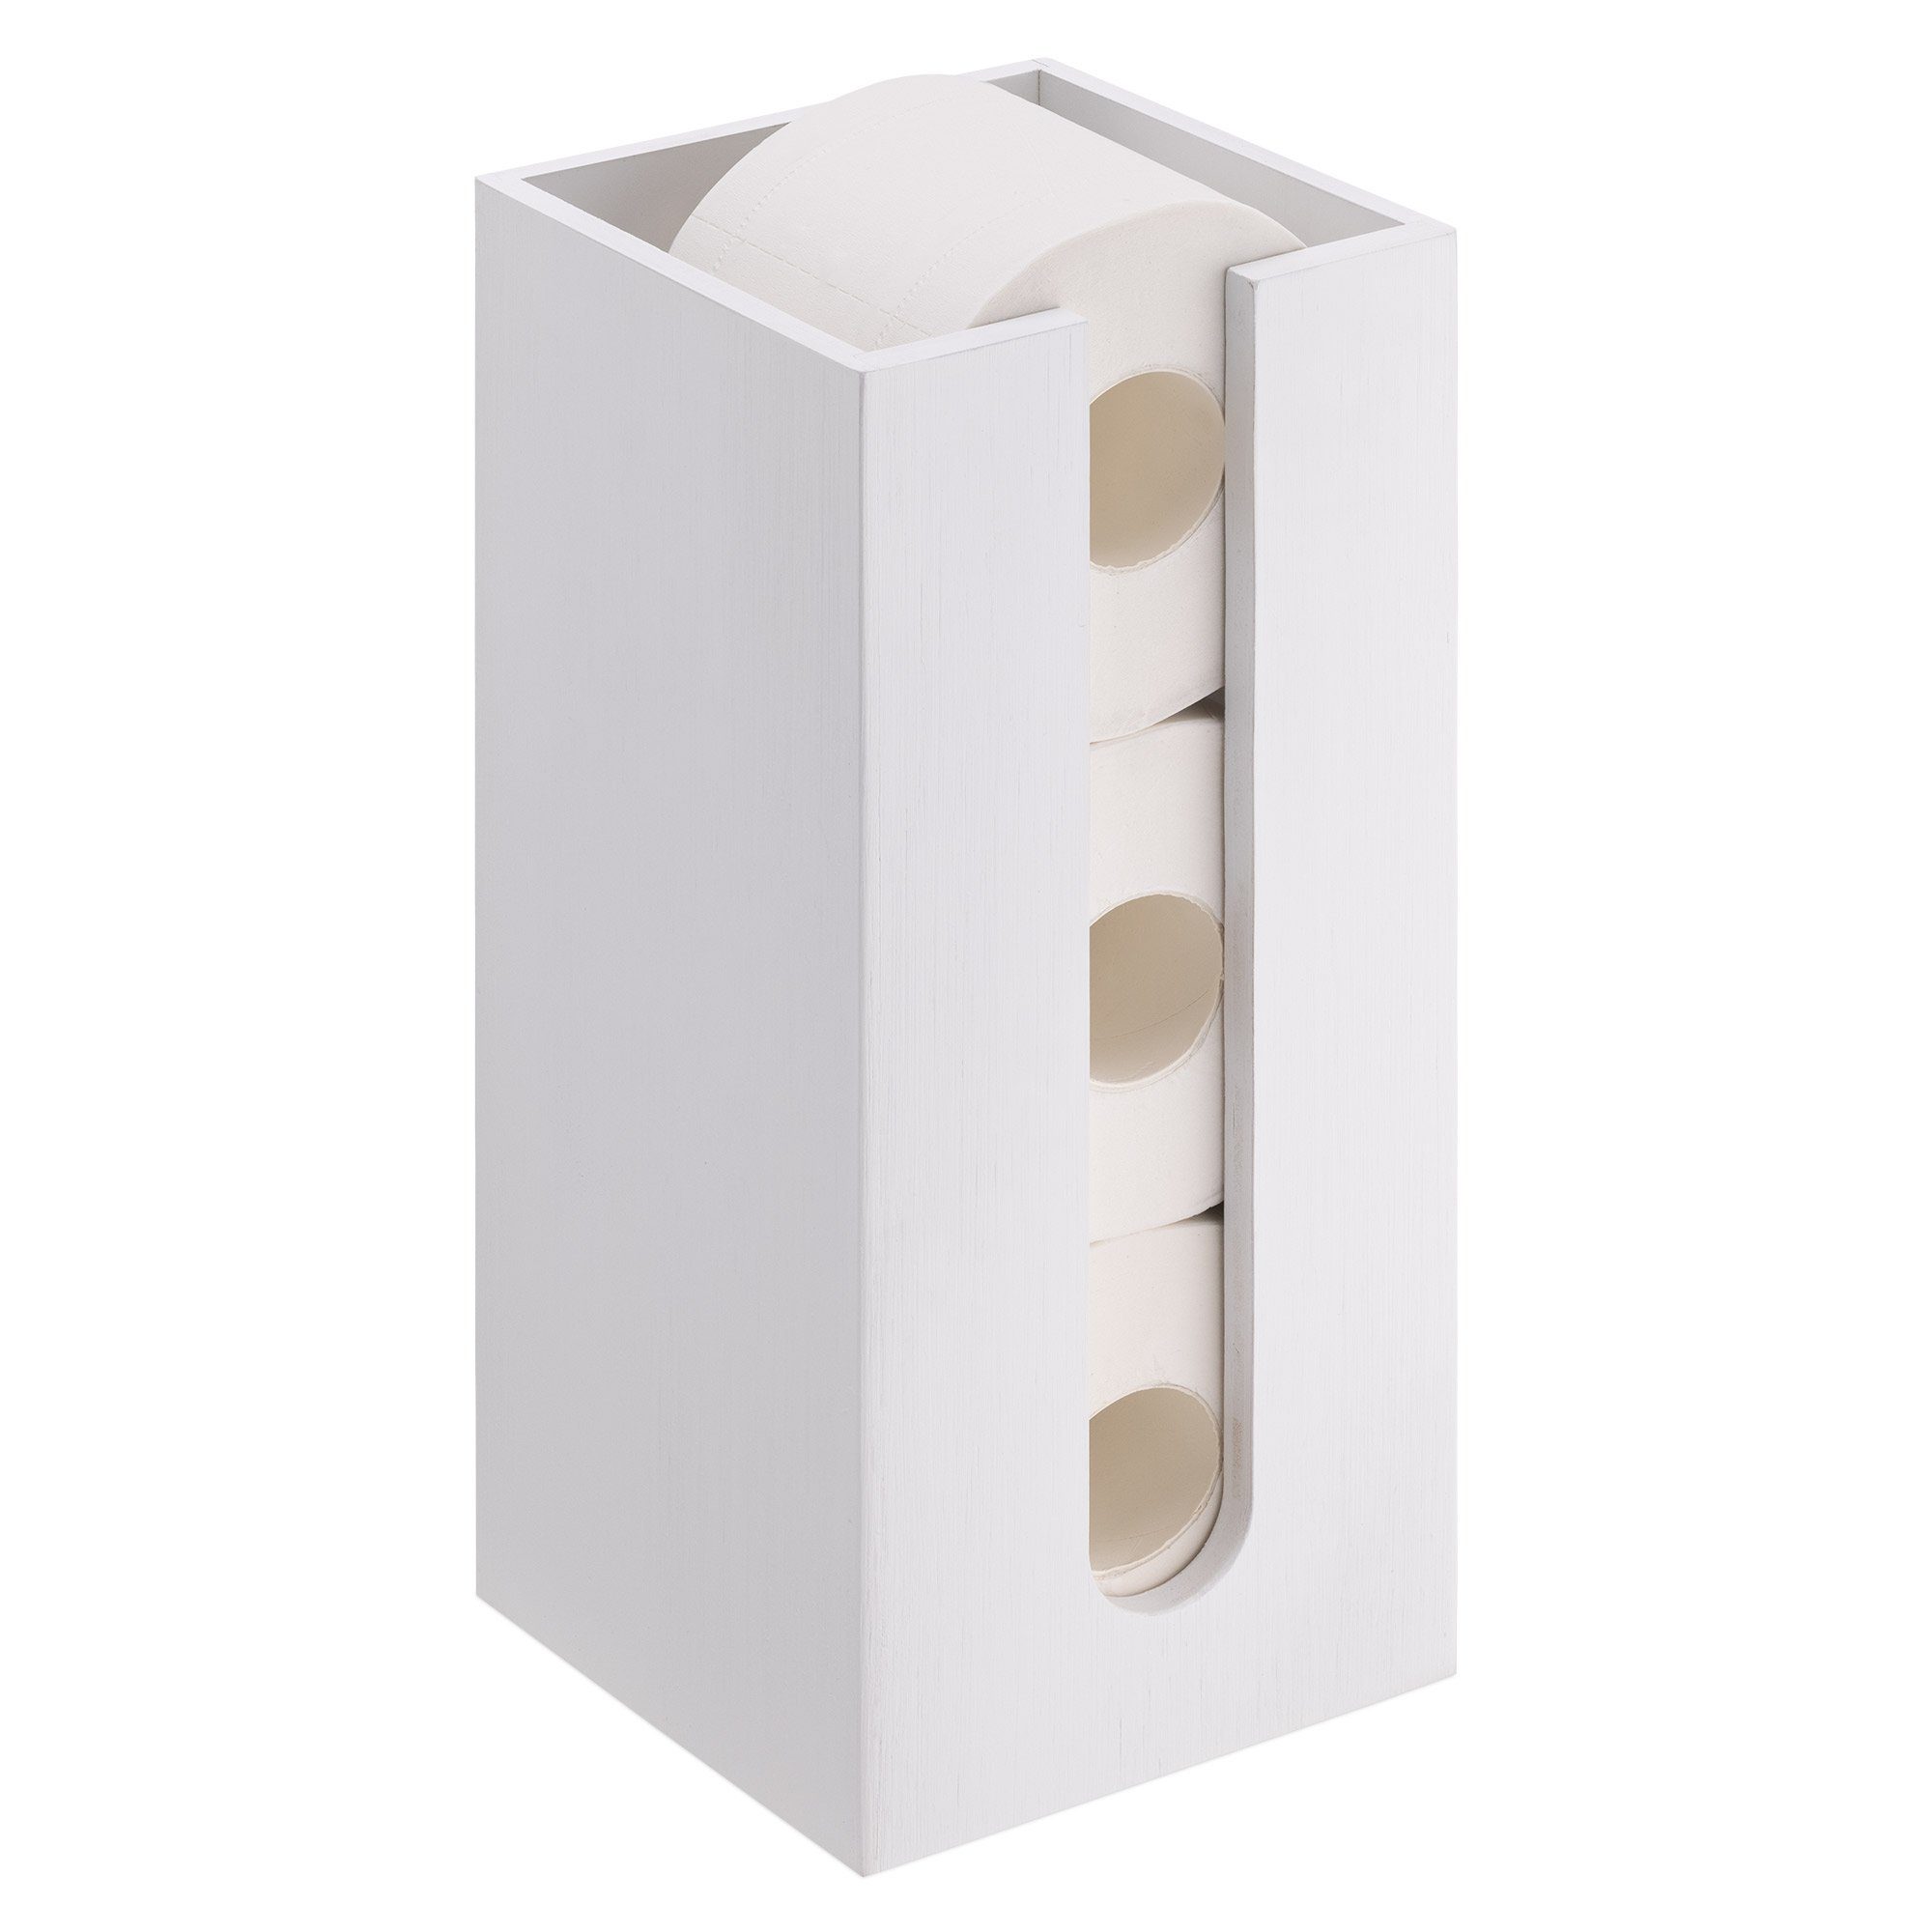 Navaris Toilettenpapierhalter Toilettenpapier Rollenhalter – 15x15x33cm – freistehend – weiß, Toilettenpapier Rollenhalter – 15x15x33cm – freistehend – weiß